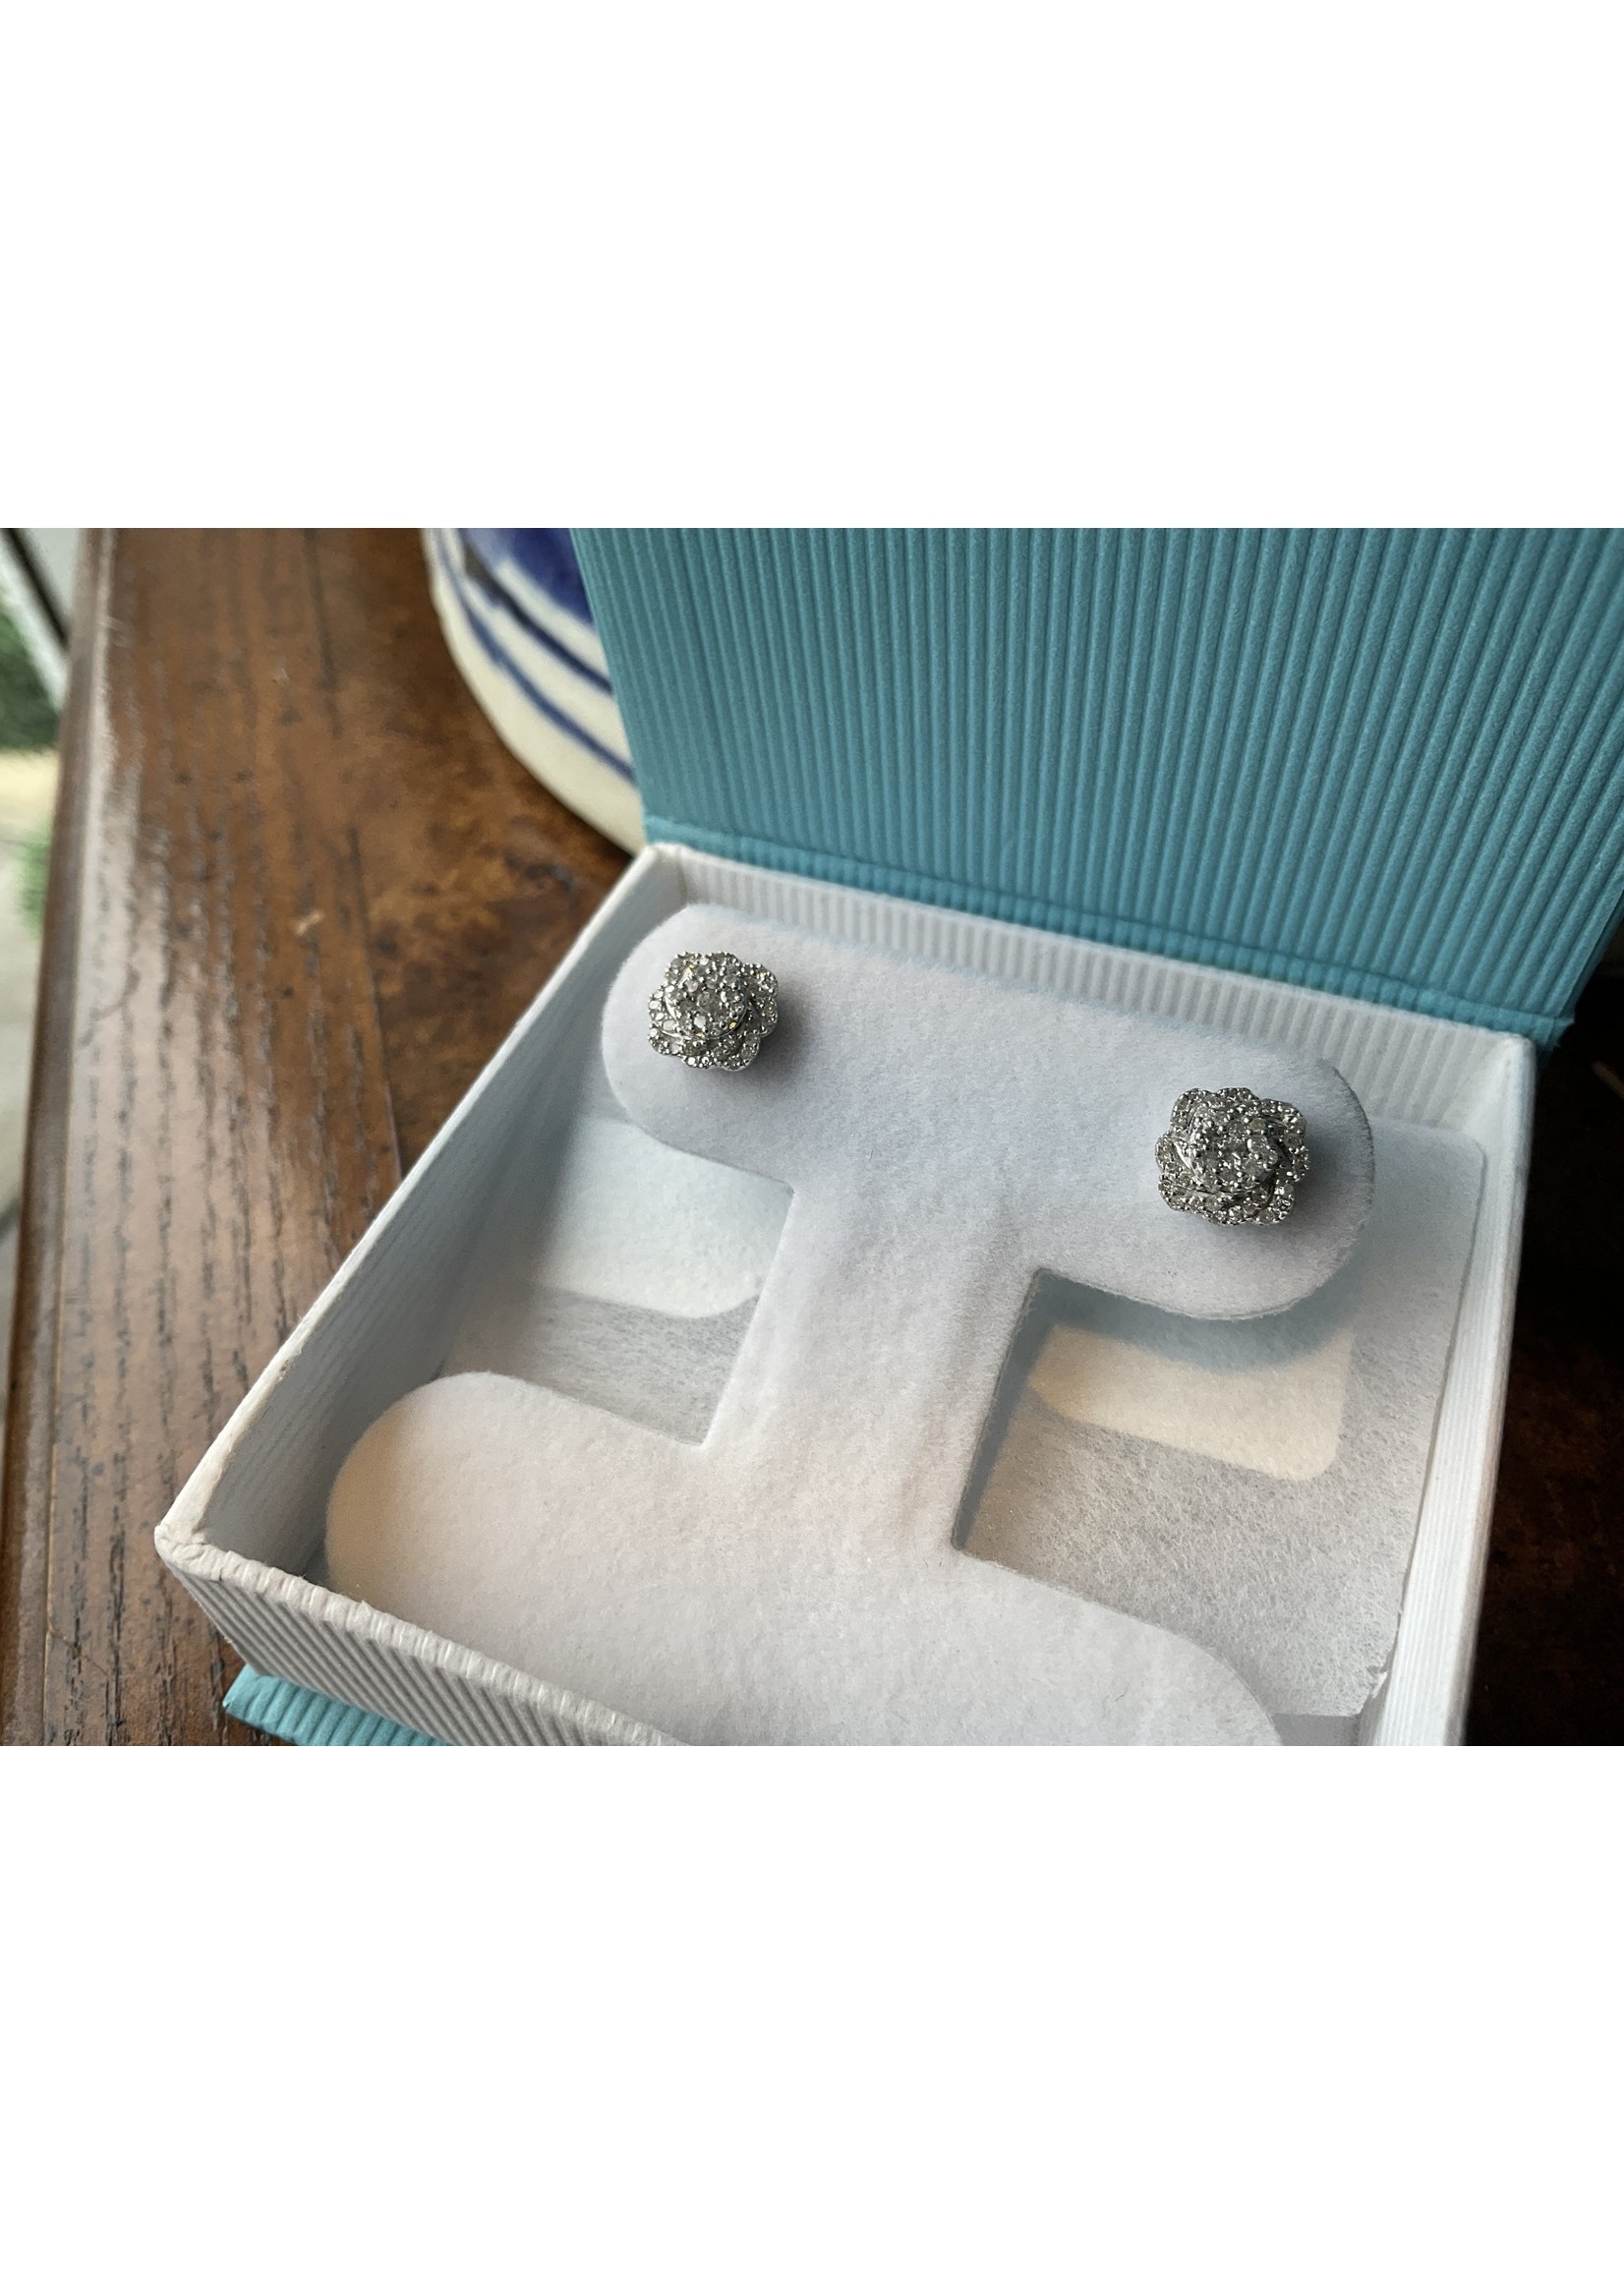 Jordans Scalloped Diamond Cluster Earring .34 cttw 10kwg